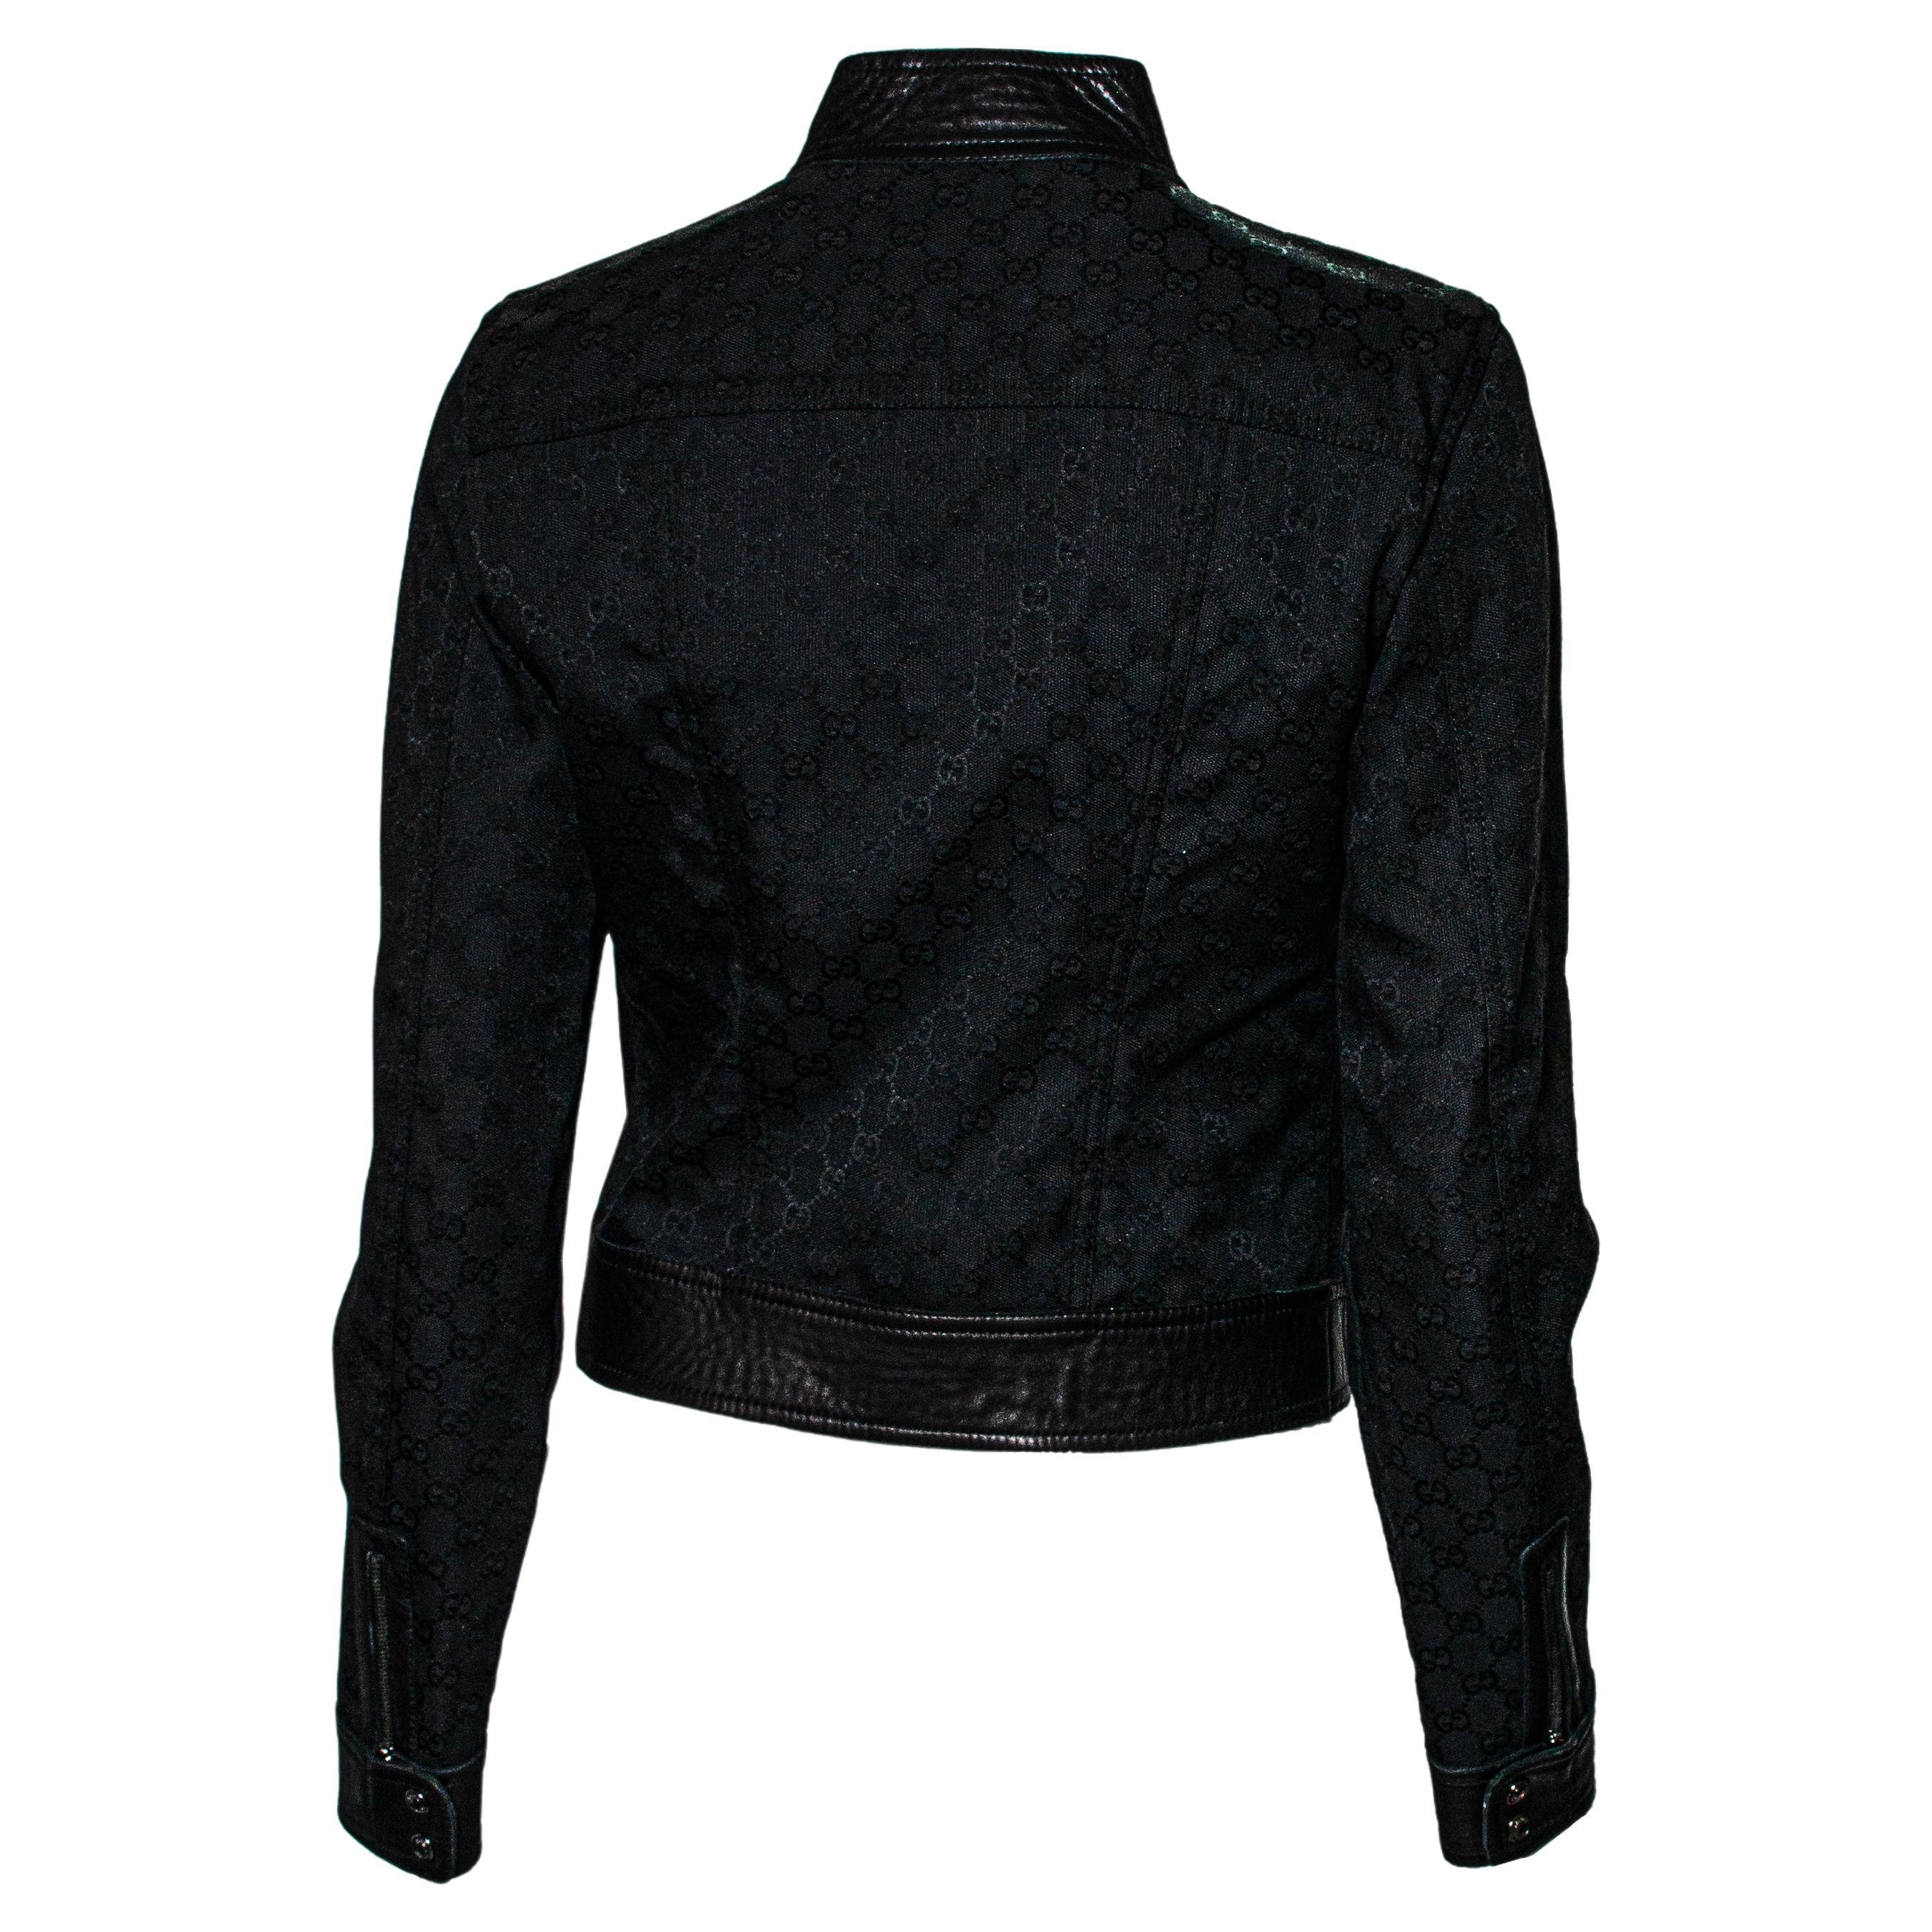 Il n'y a pas plus Gucci que cela... Conçue par Tom Ford pour la collection F/W 2000, cette veste est fabriquée en cuir et recouverte d'une toile noire portant le monogramme 'GG' de Gucci. Cette pièce comporte deux poches zippées au niveau de la